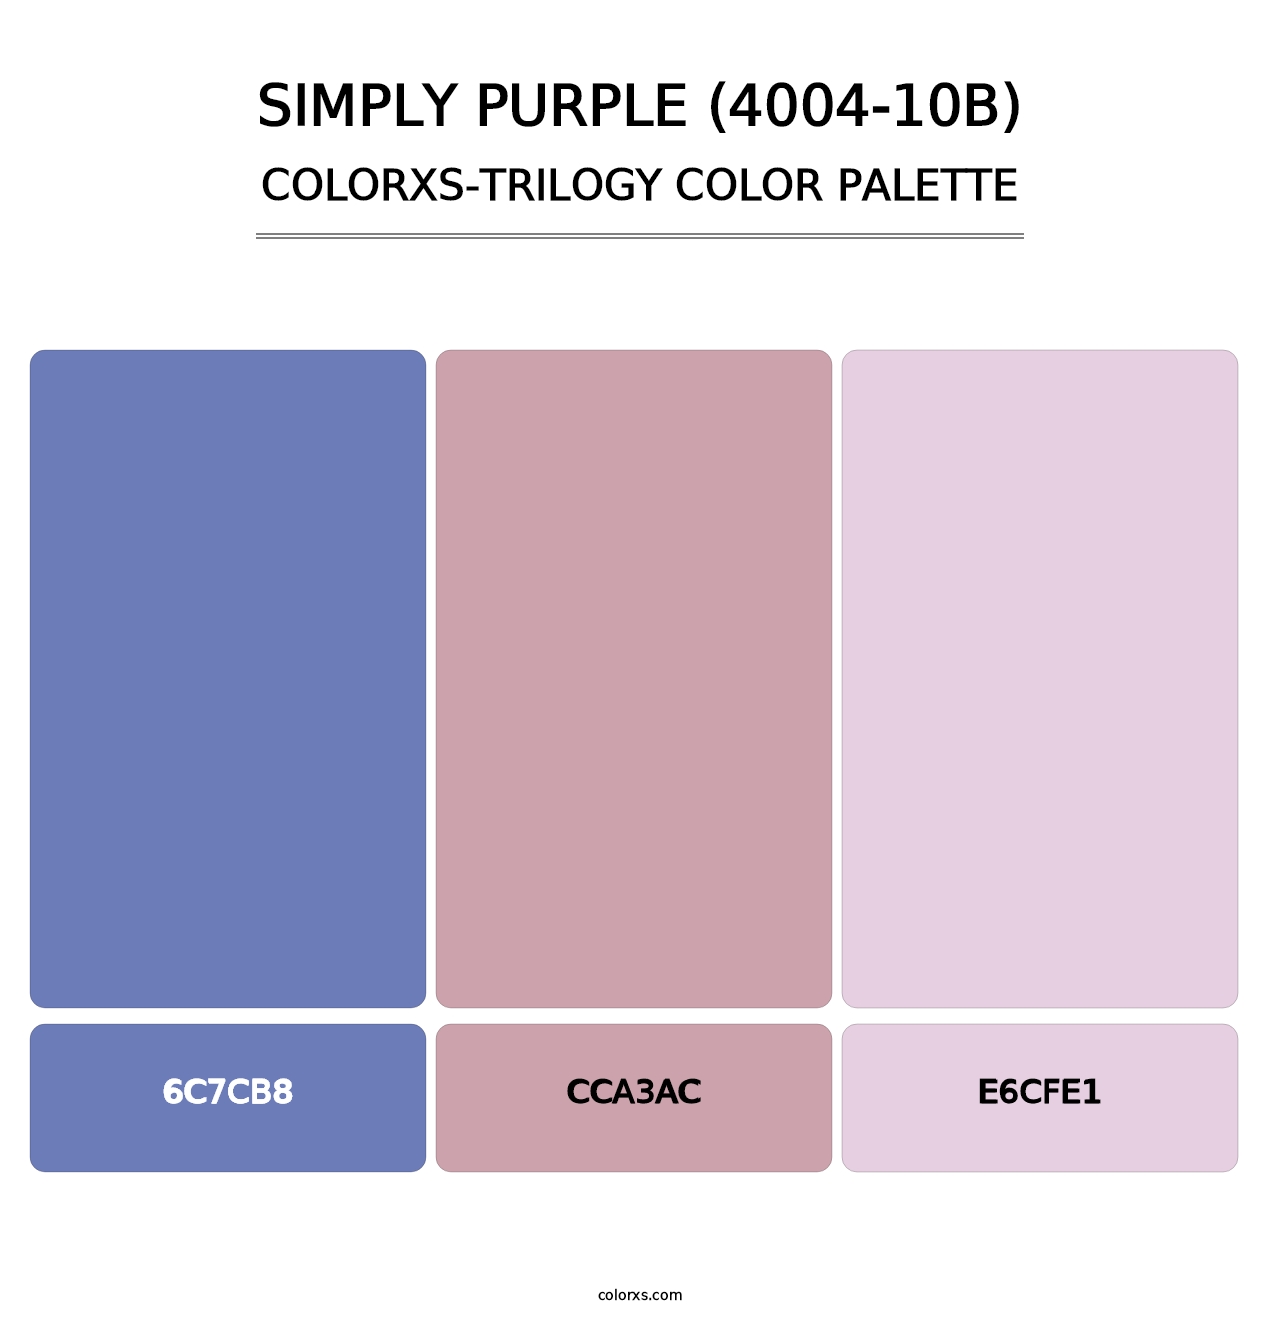 Simply Purple (4004-10B) - Colorxs Trilogy Palette